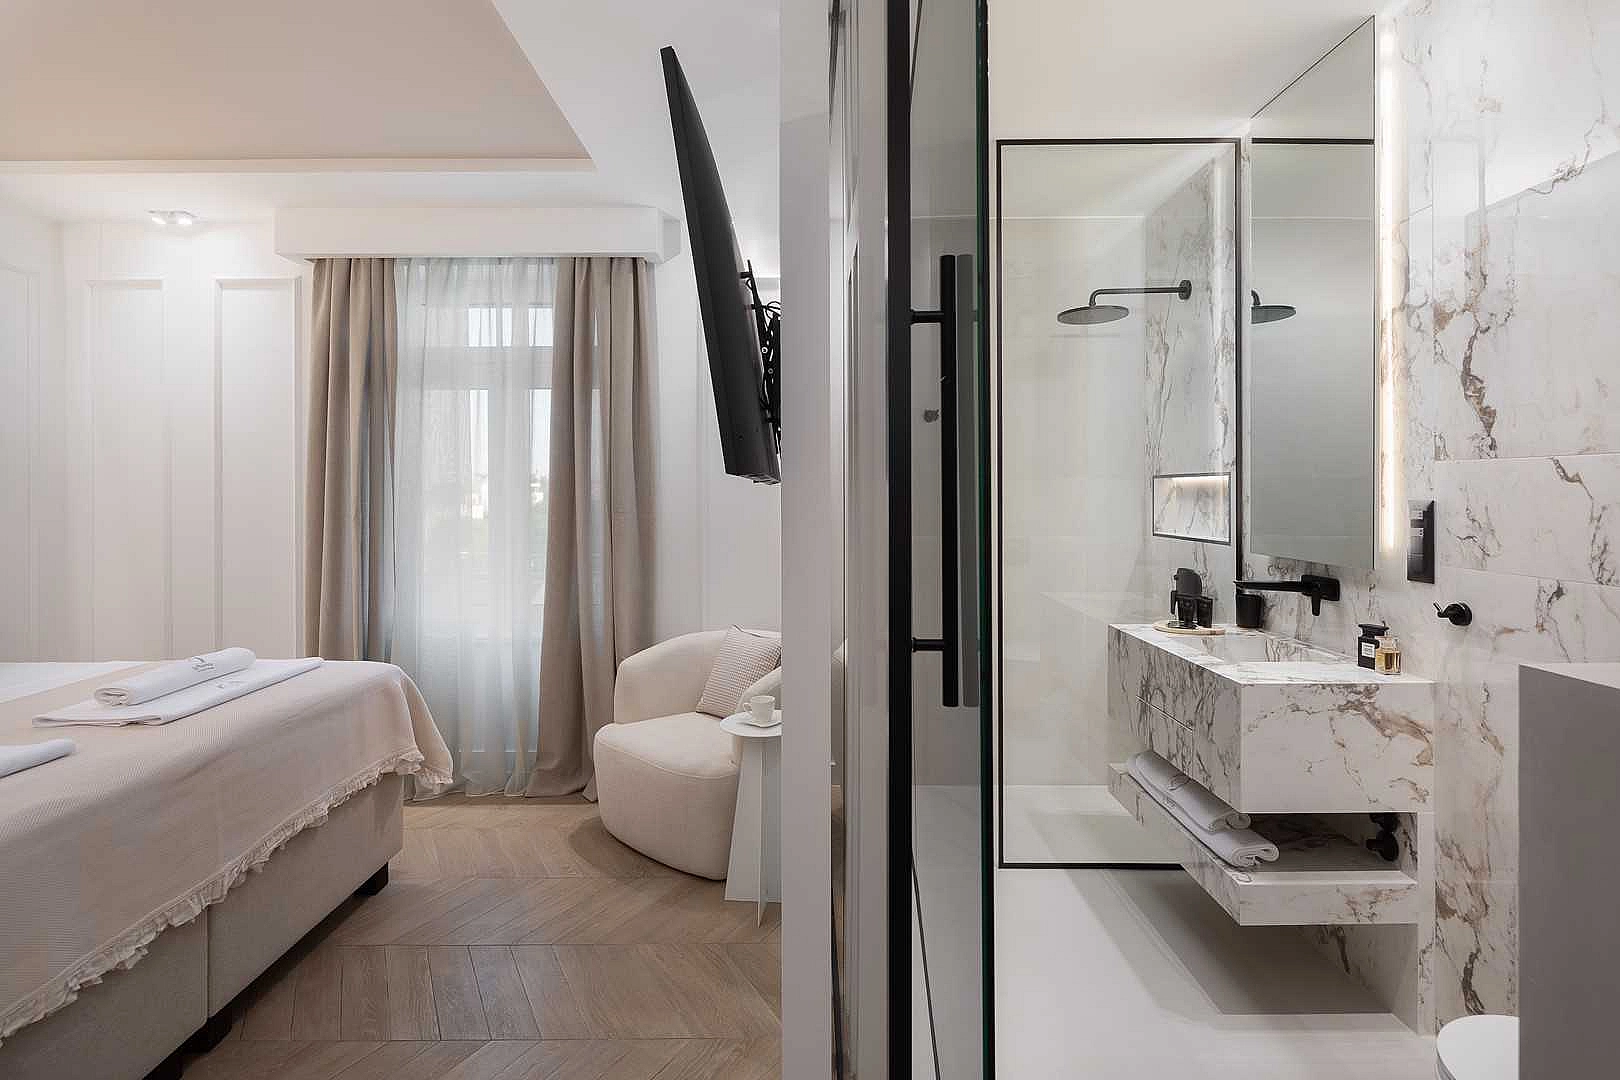 Elegance Room in Split